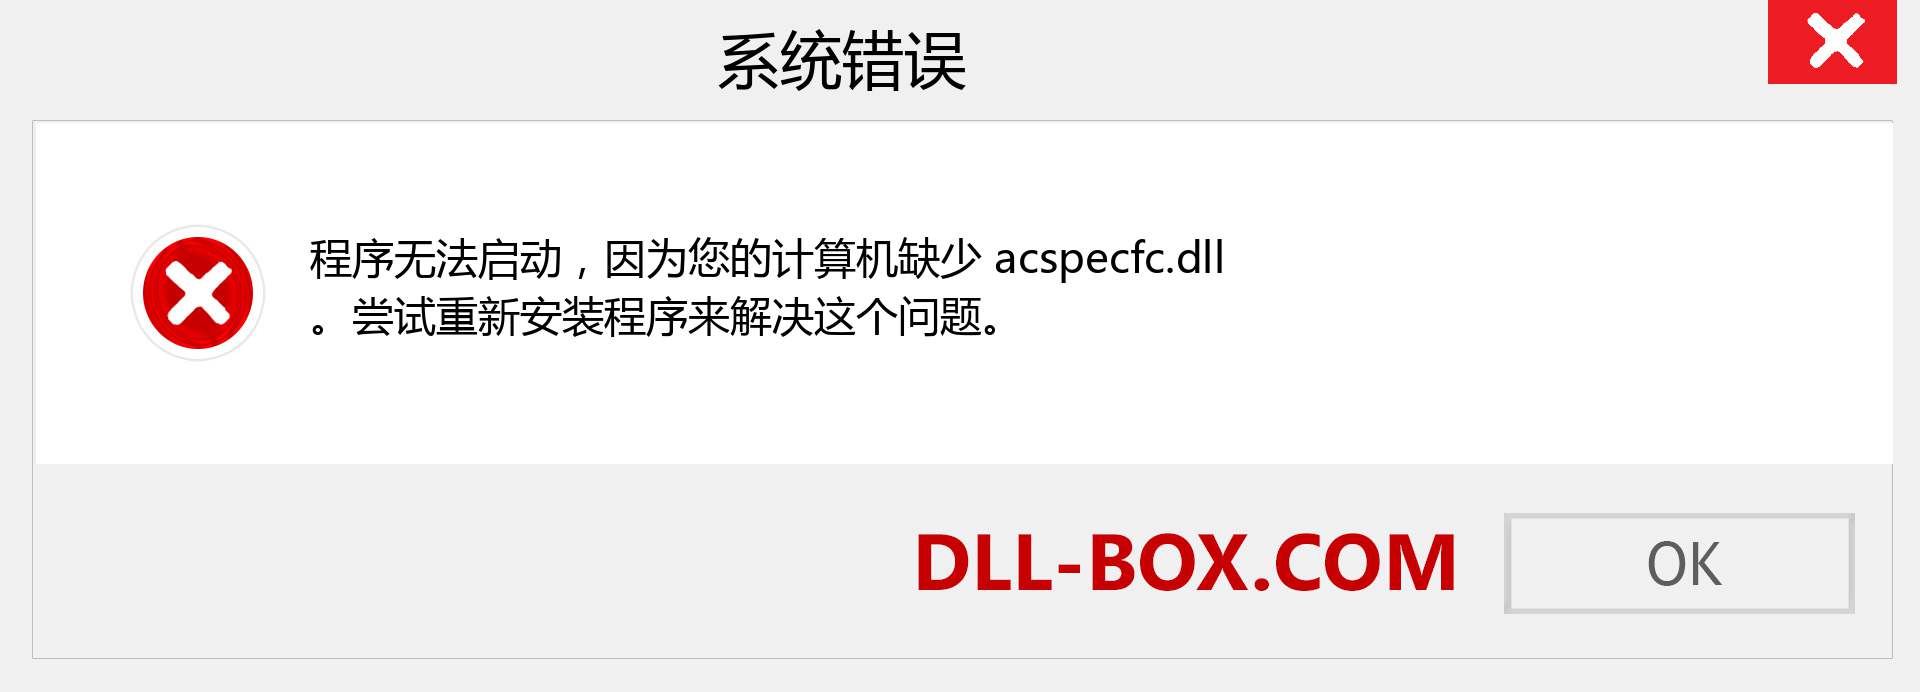 acspecfc.dll 文件丢失？。 适用于 Windows 7、8、10 的下载 - 修复 Windows、照片、图像上的 acspecfc dll 丢失错误